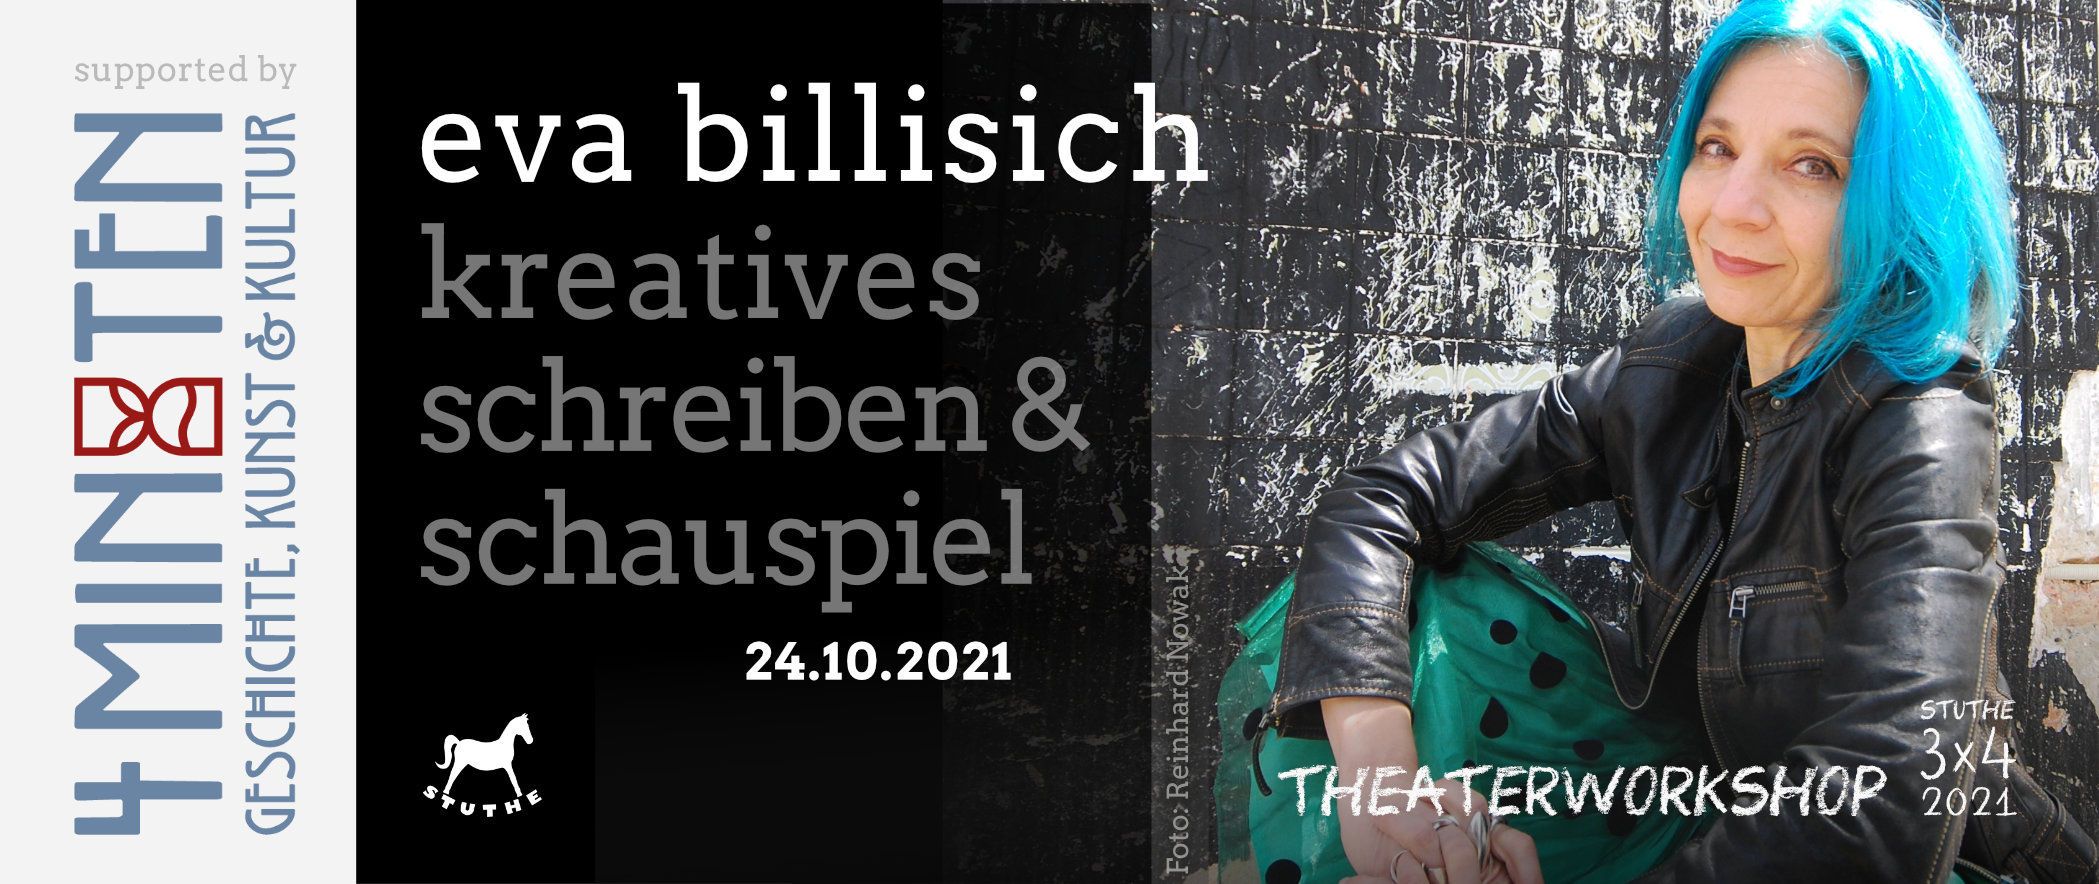 Workshop Banner Eva Billisich- 3x4 STUTHE Profiworkshopreihe 2021